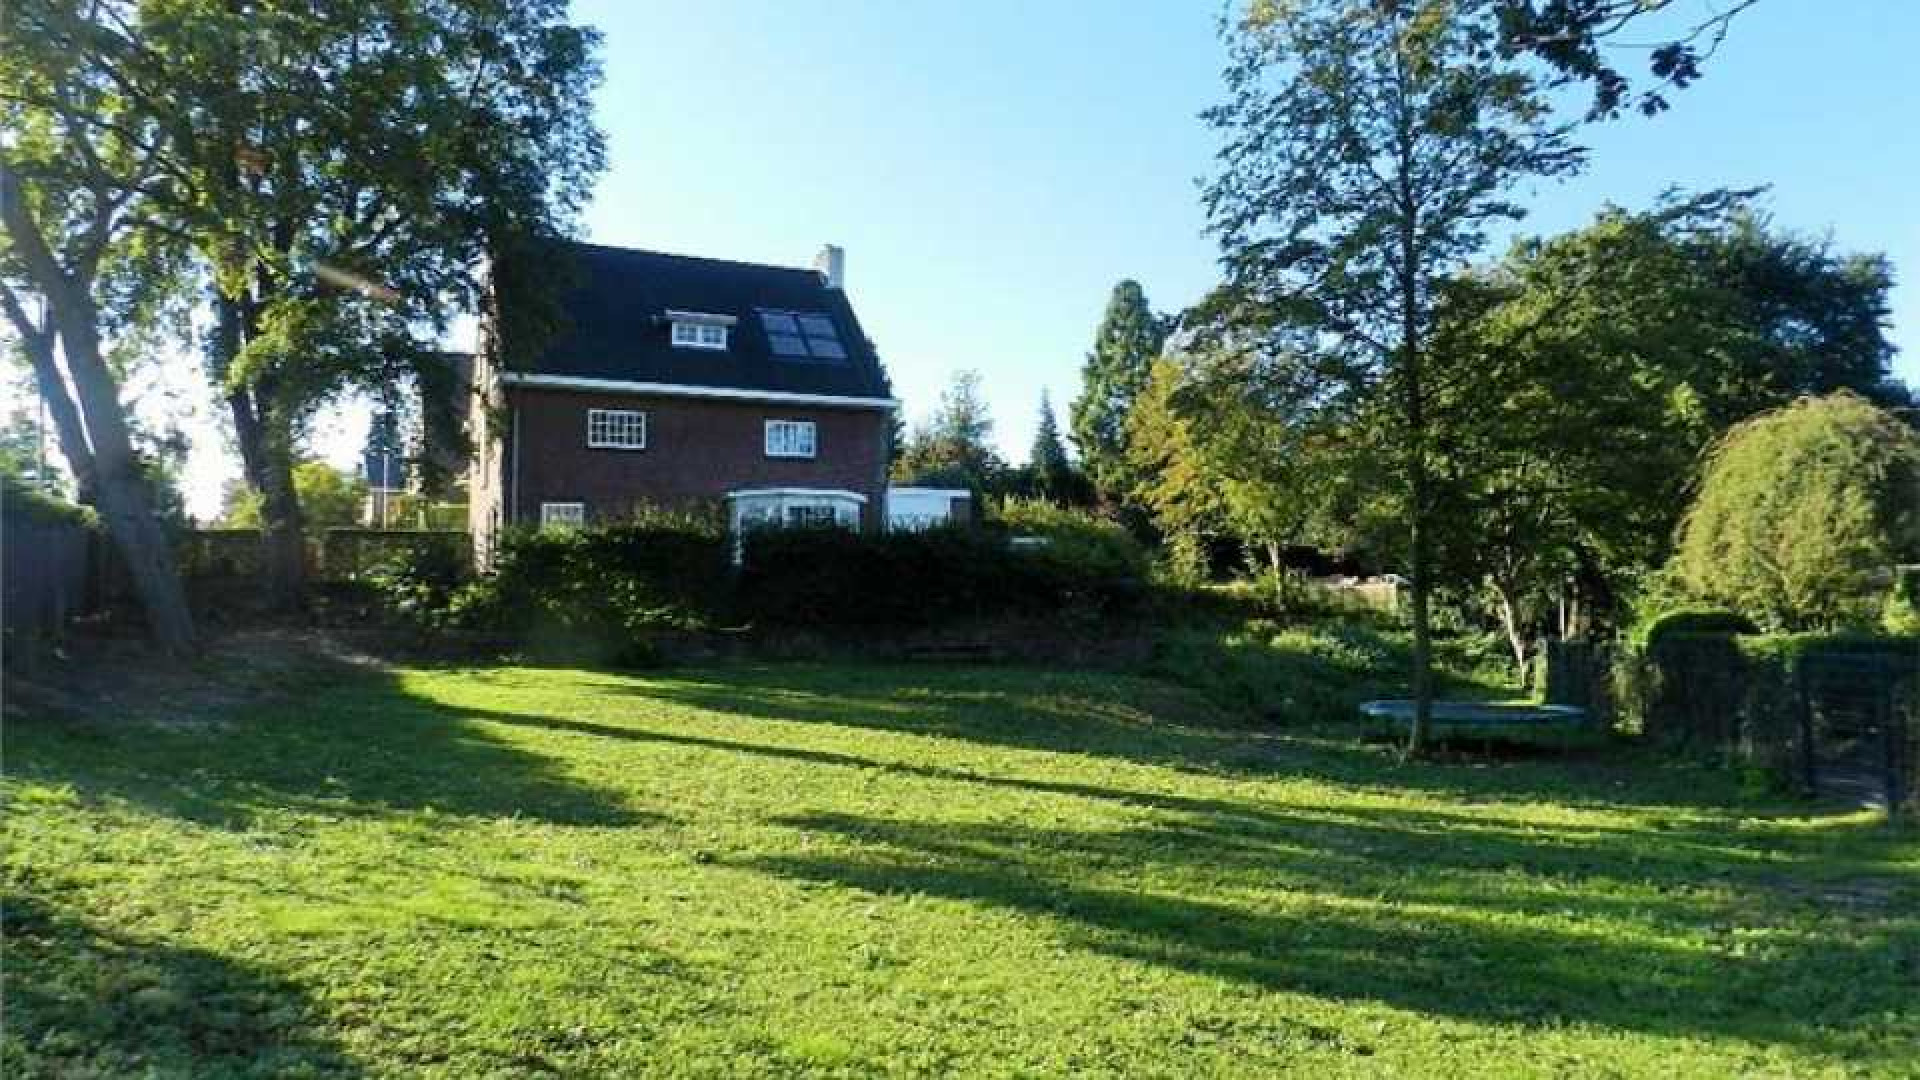 PvdA topper Frans Timmermans zet zijn villa in Heerlen te koop.